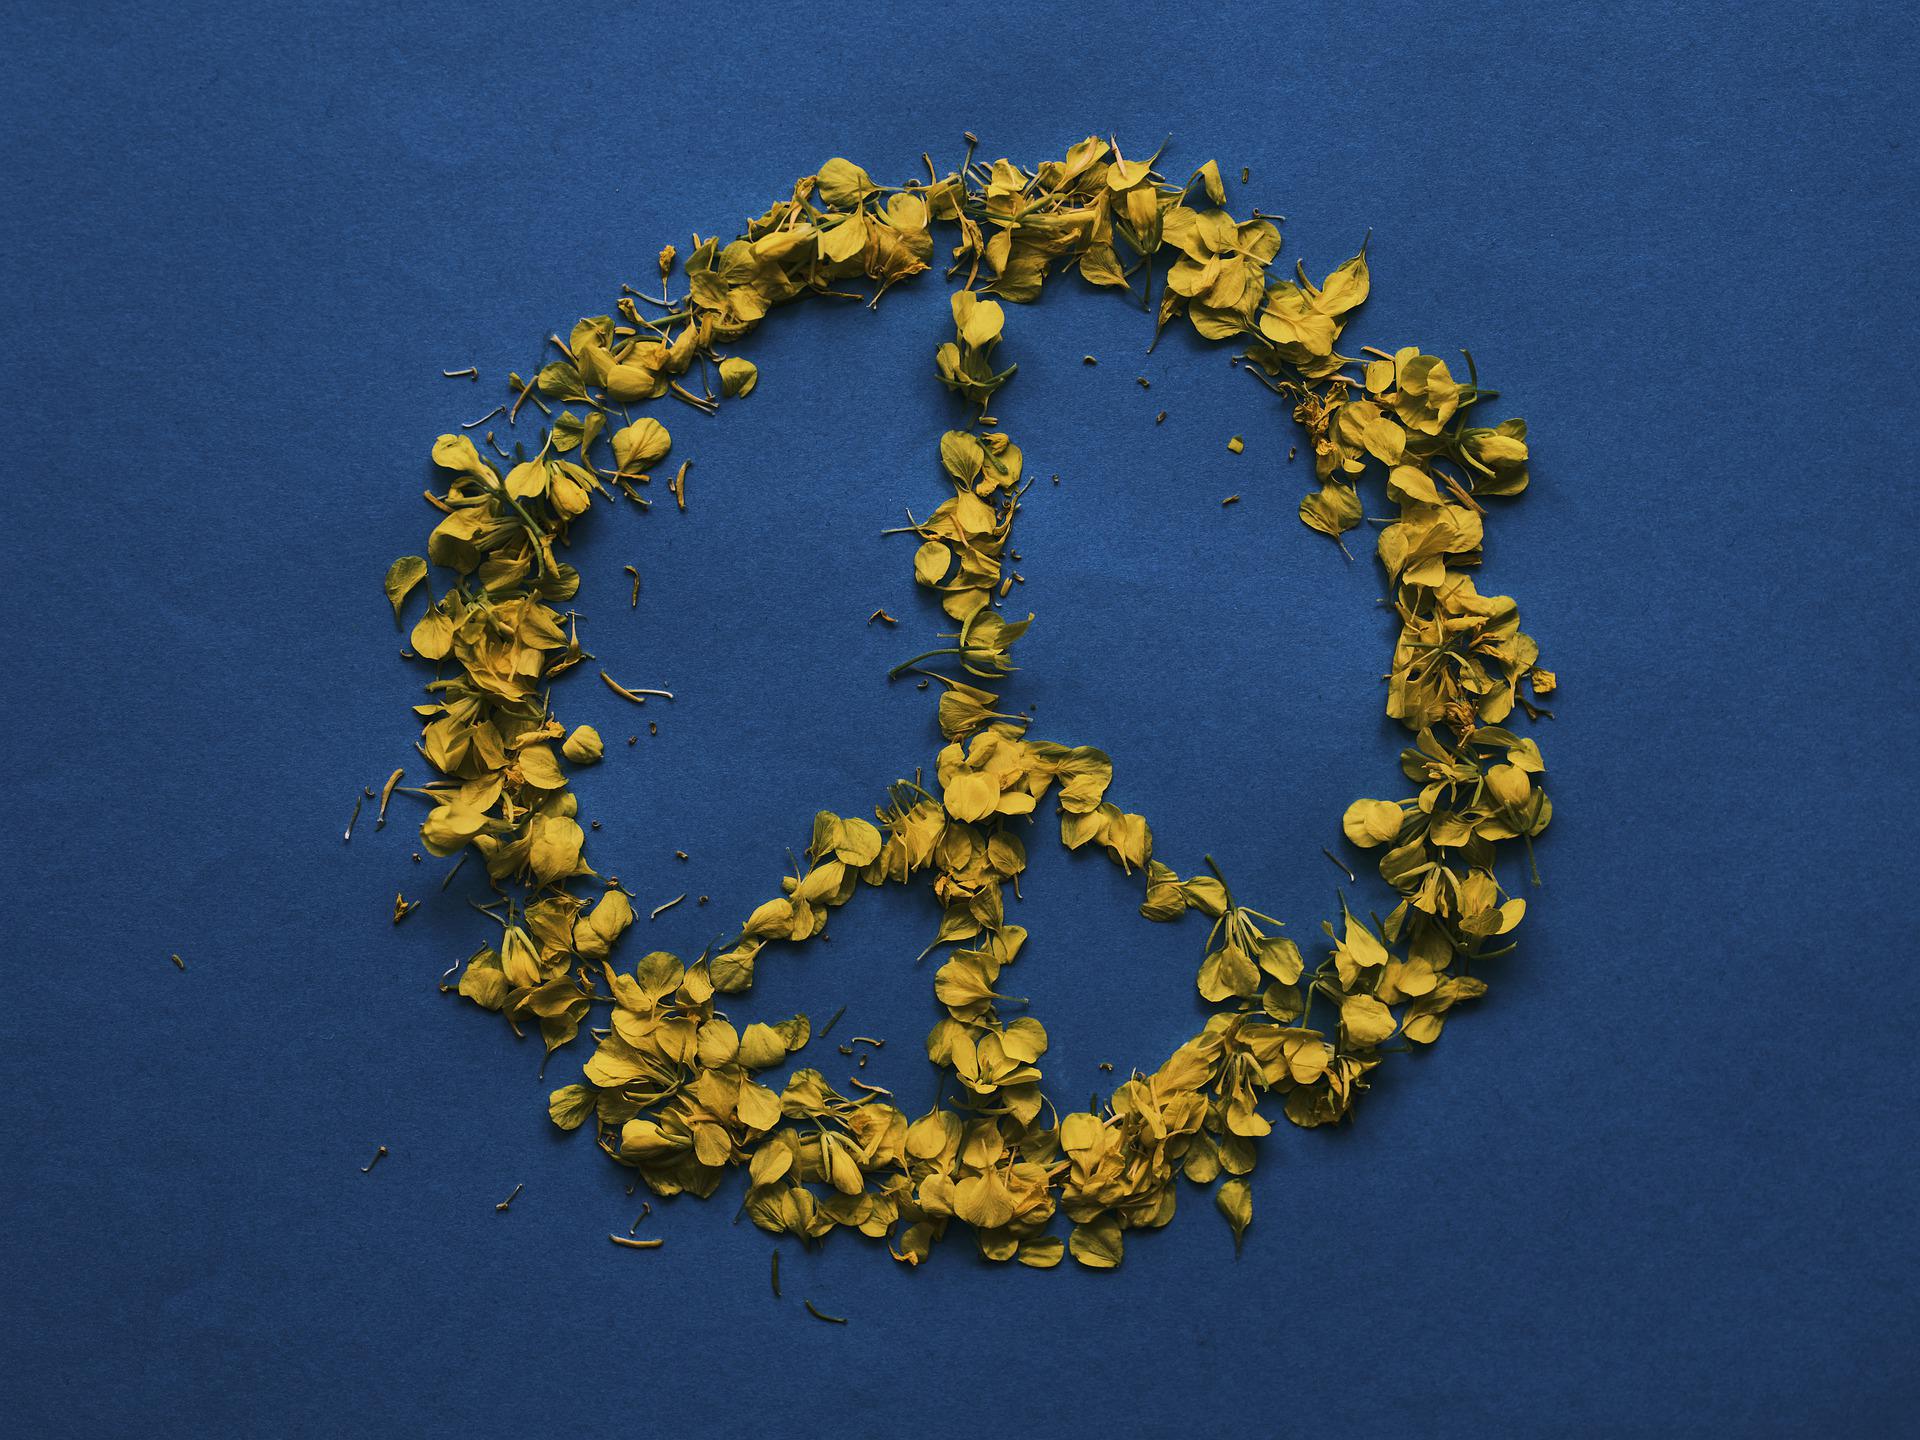 peace symbol made of petals